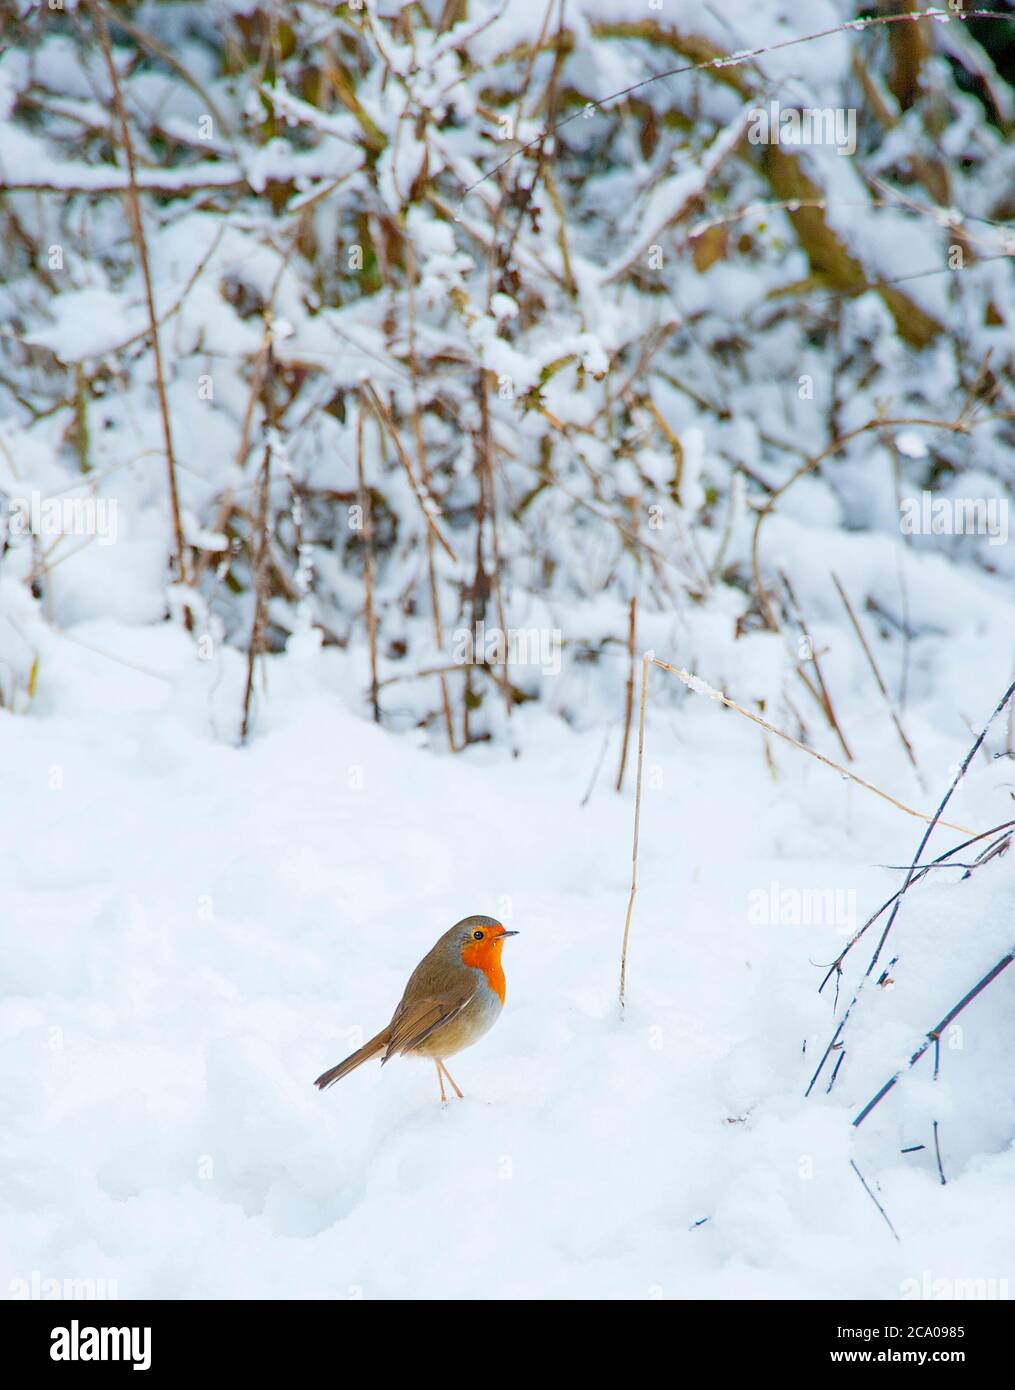 Robin in snow Stock Photo